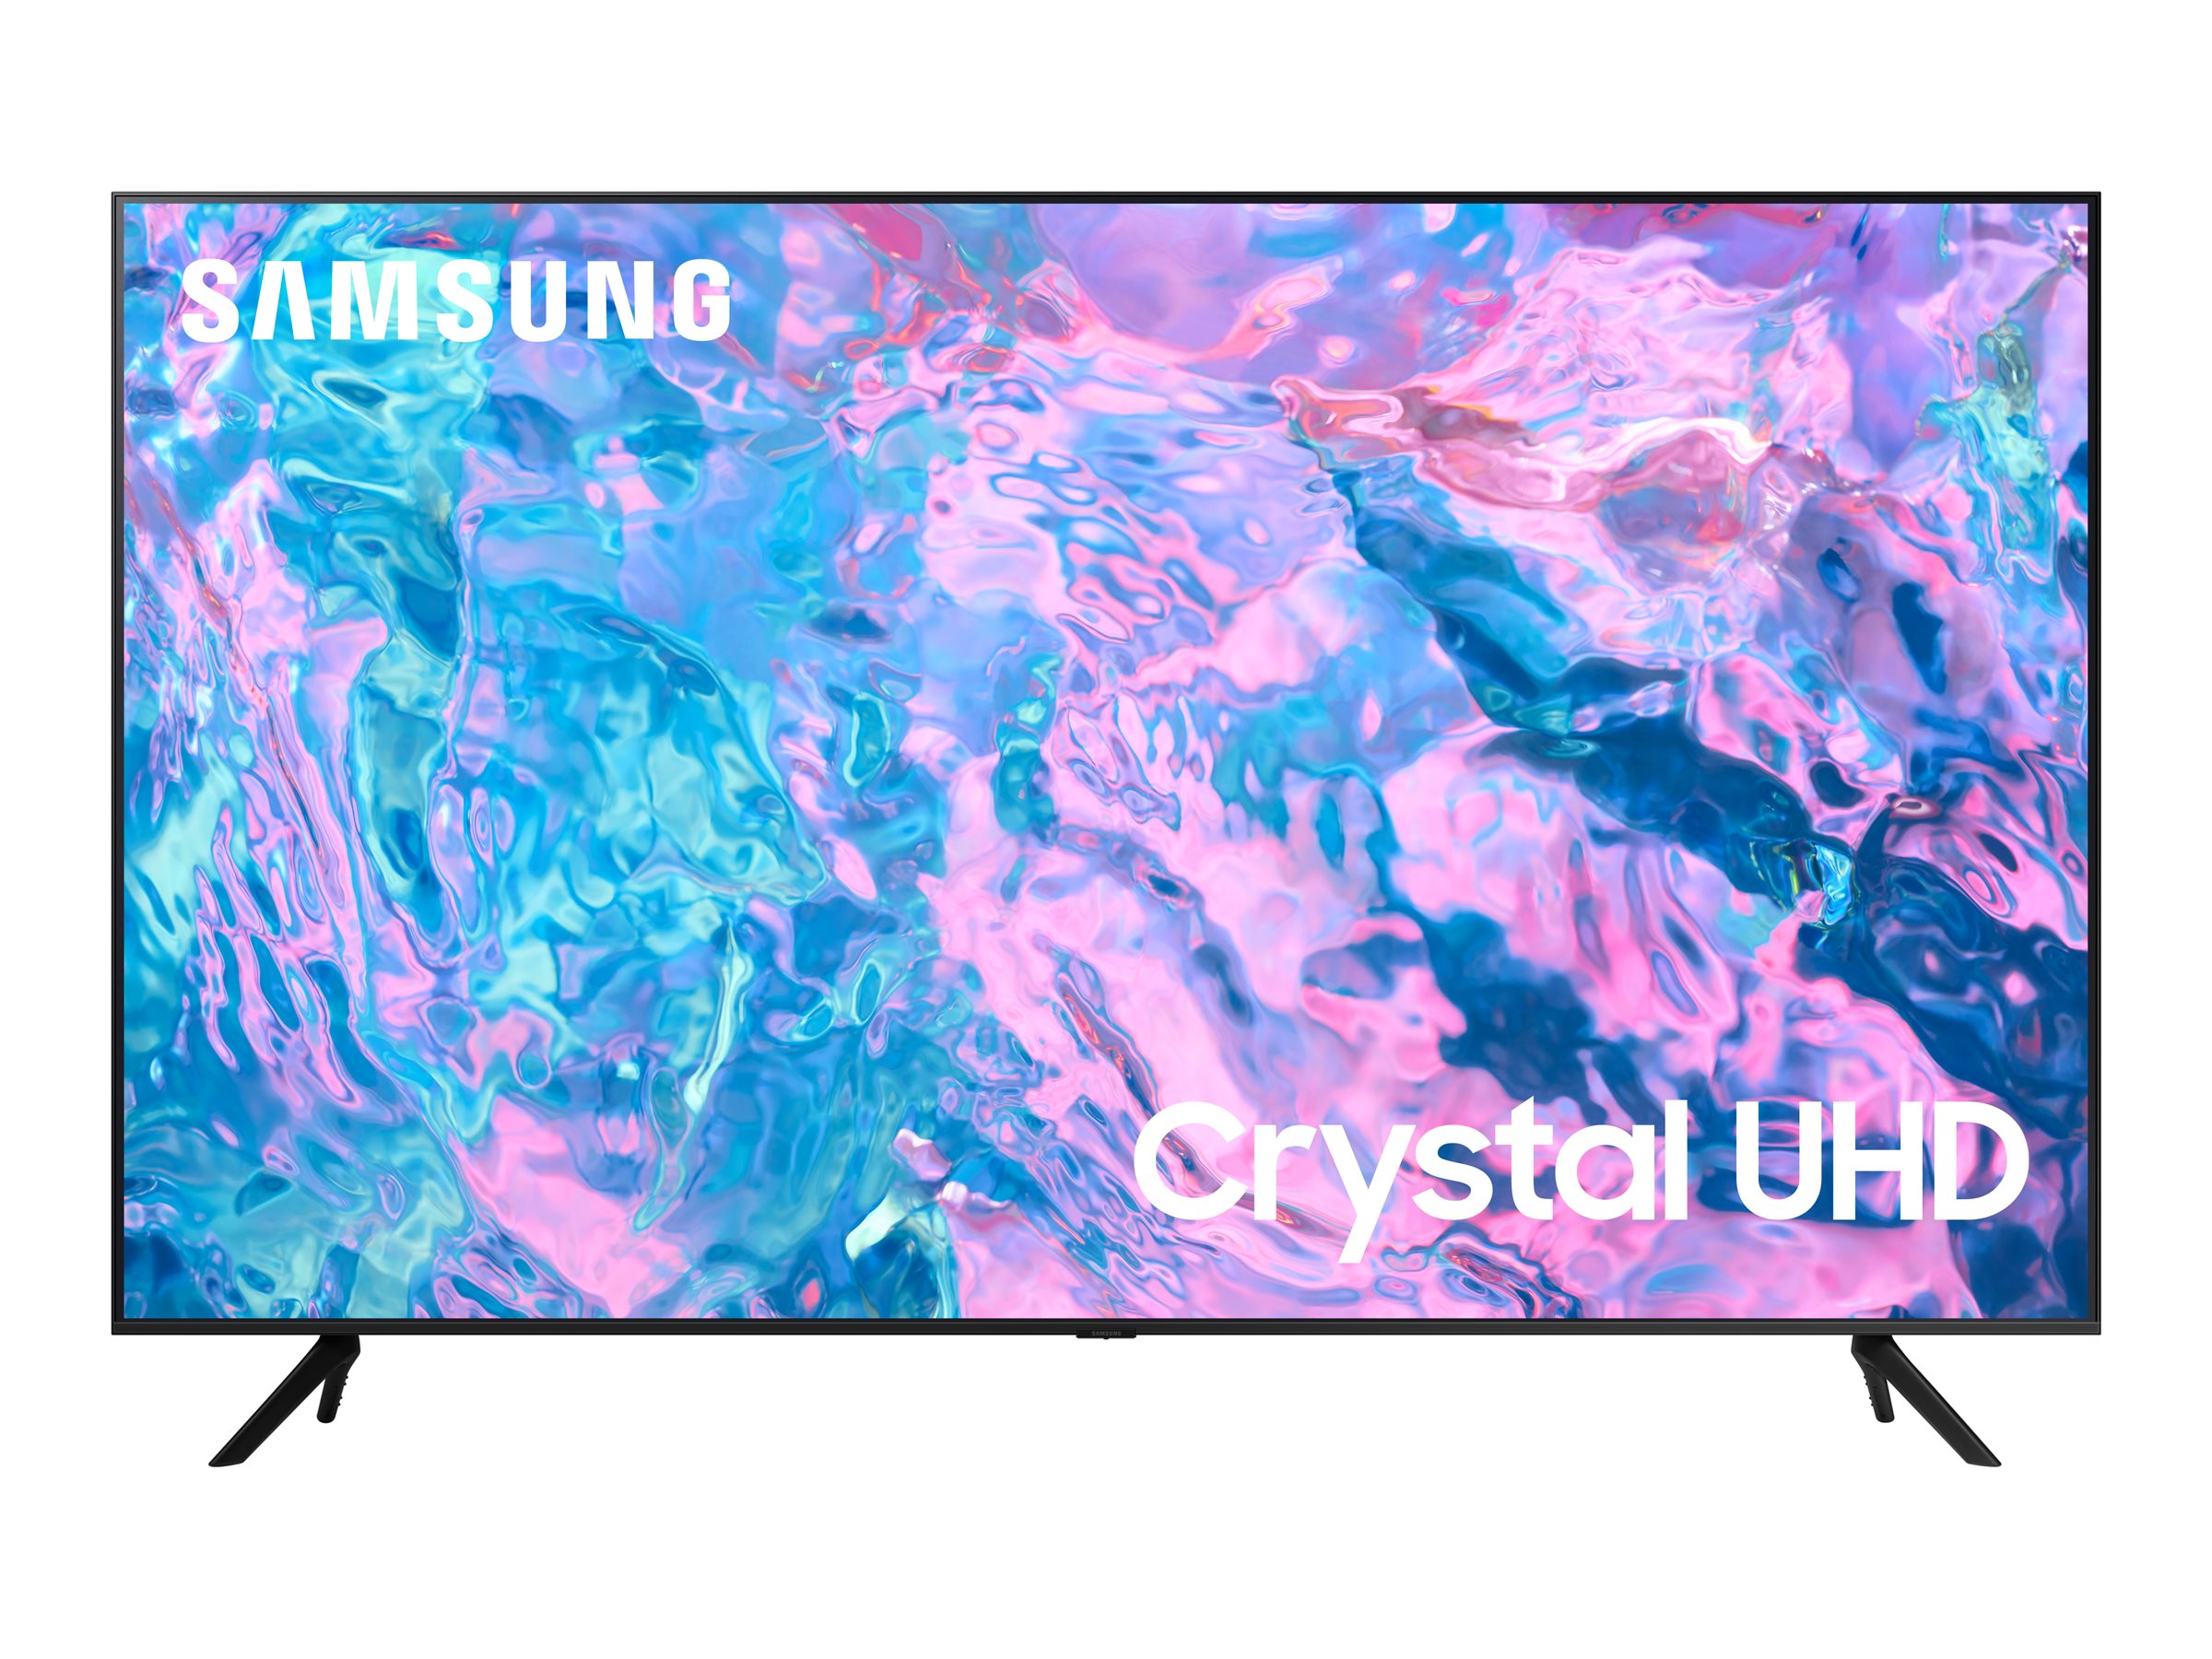 Samsung HG65CU700EU - Classe de diagonale 65" HCU7000 Series TV LCD rétro-éclairée par LED - Crystal UHD - hôtel / hospitalité - Tizen OS - 4K UHD (2160p) 3840 x 2160 - HDR - noir - HG65CU700EUXEN - Télévisions et écrans pour le secteur de l'hôtellerie